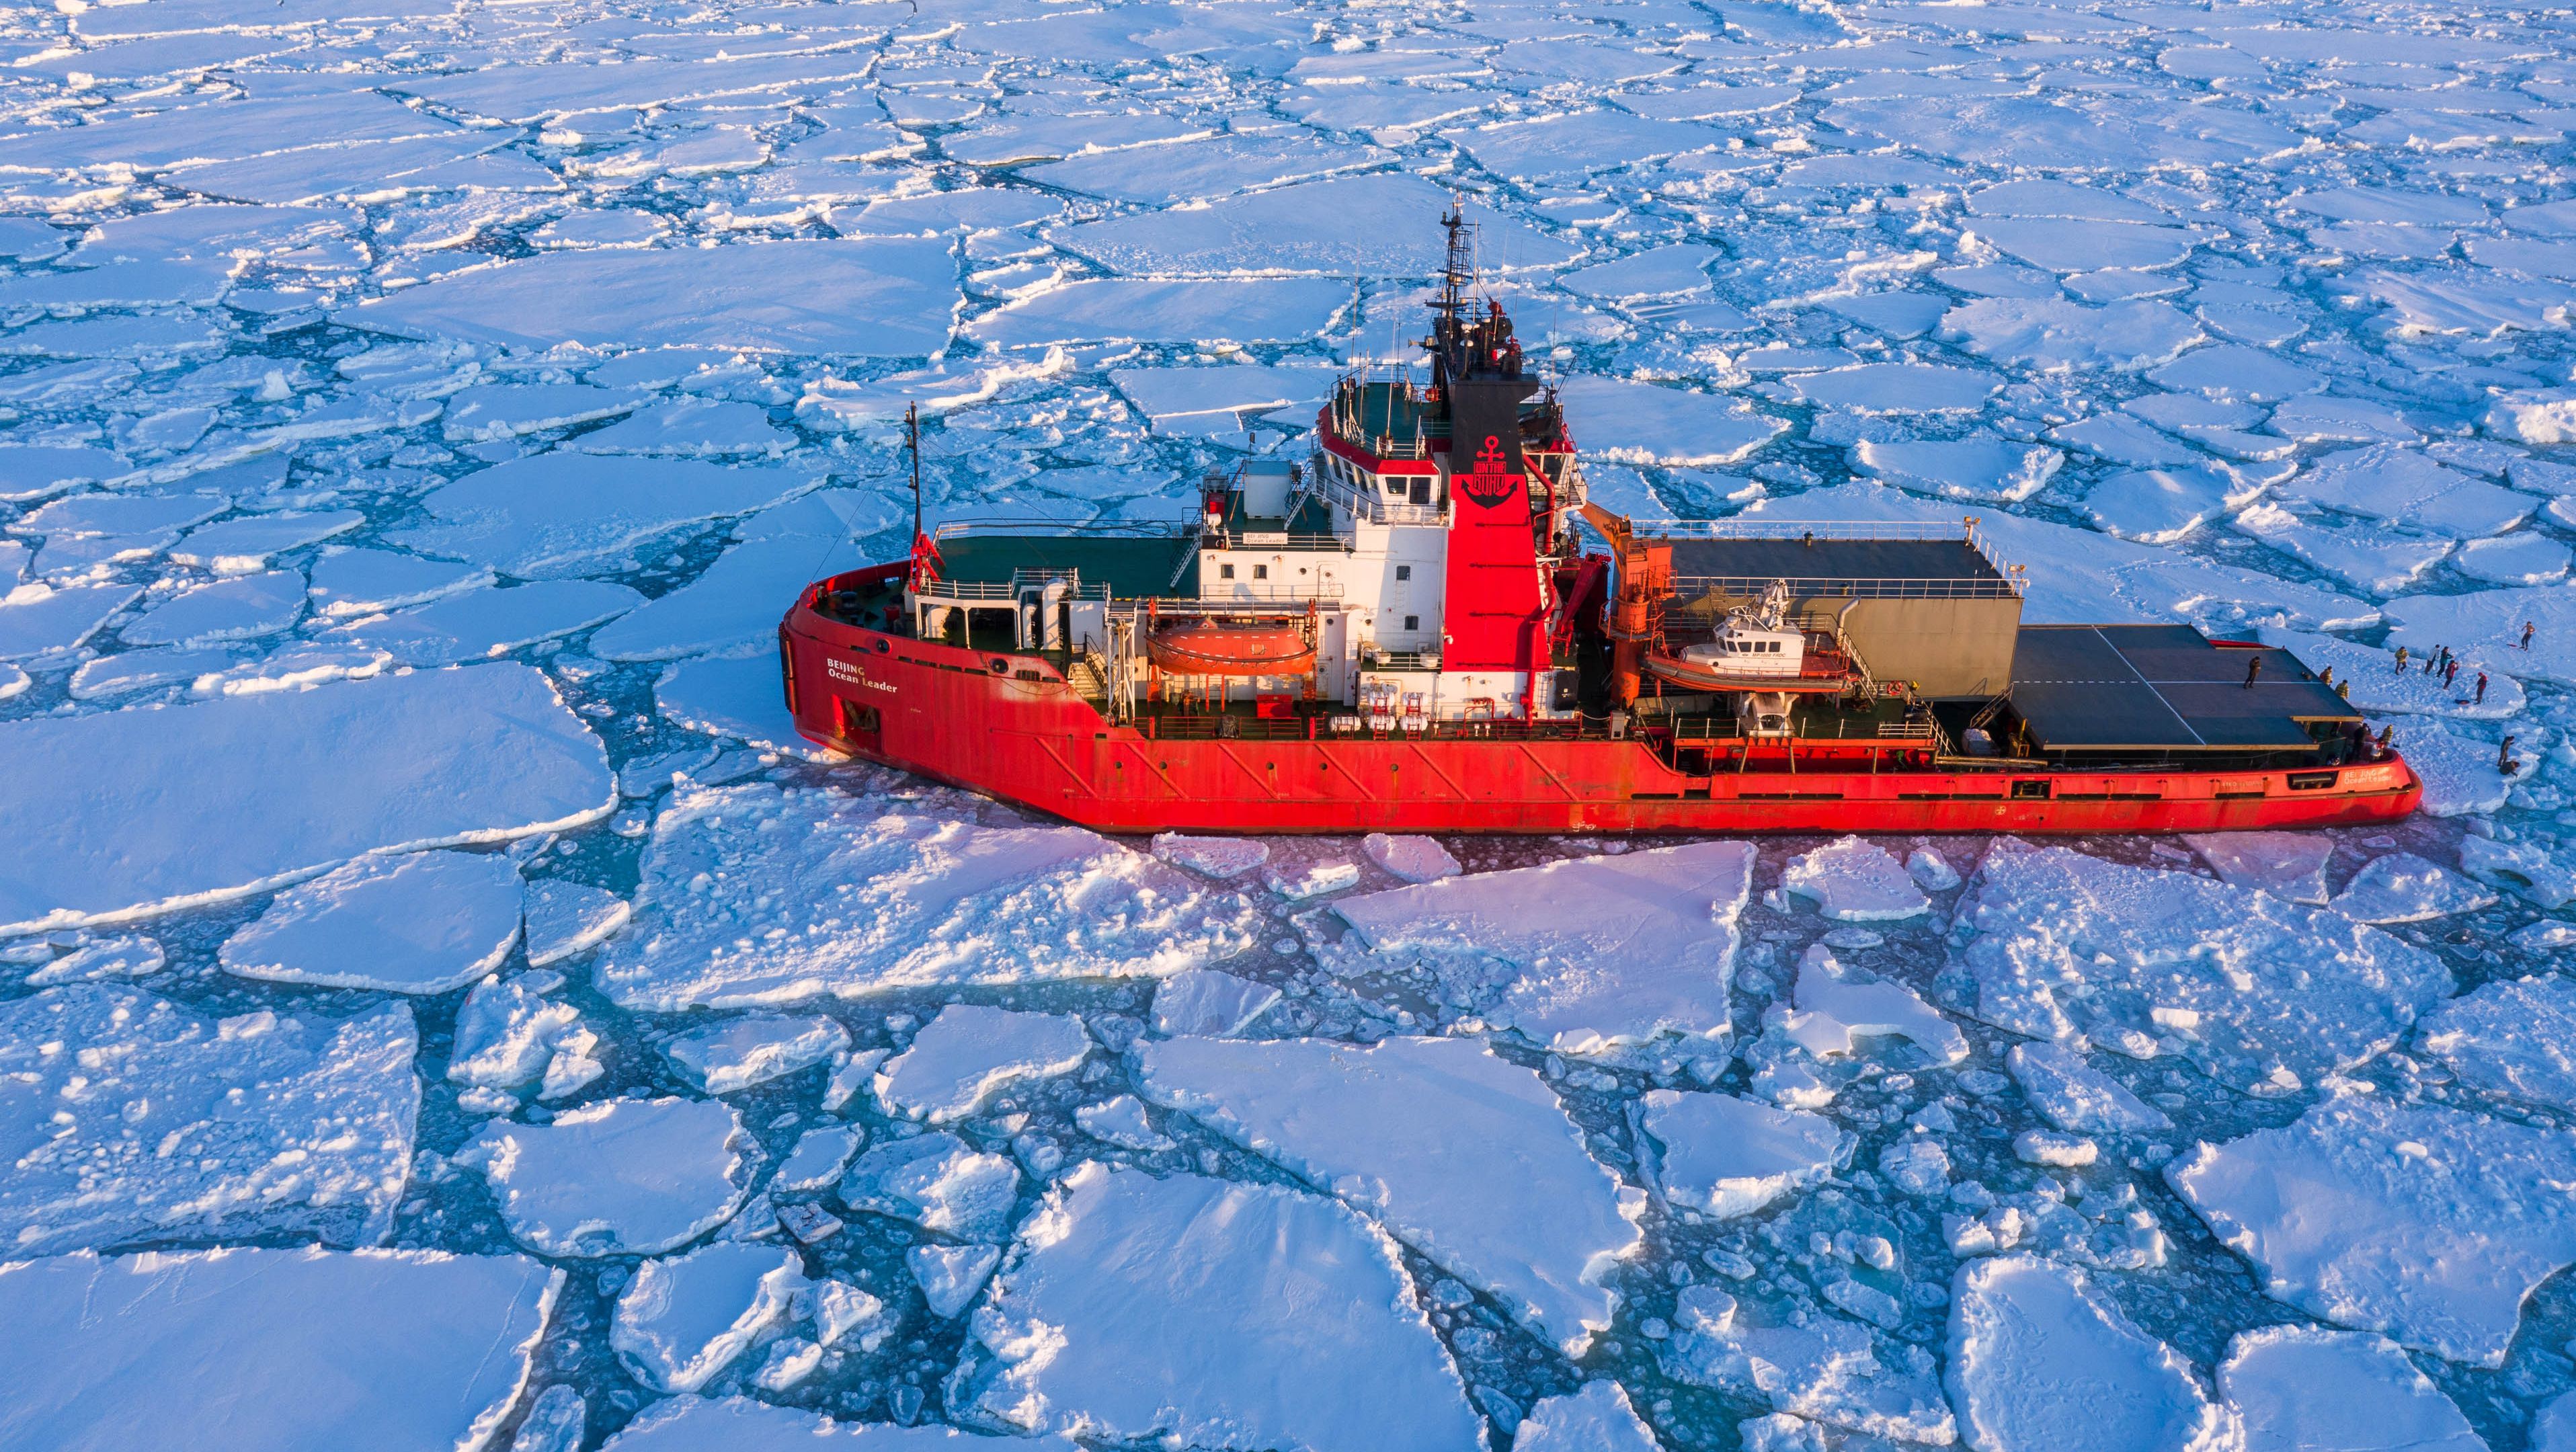 2019年6月北极点90度年度首航破冰之旅-广州极至国际旅行社